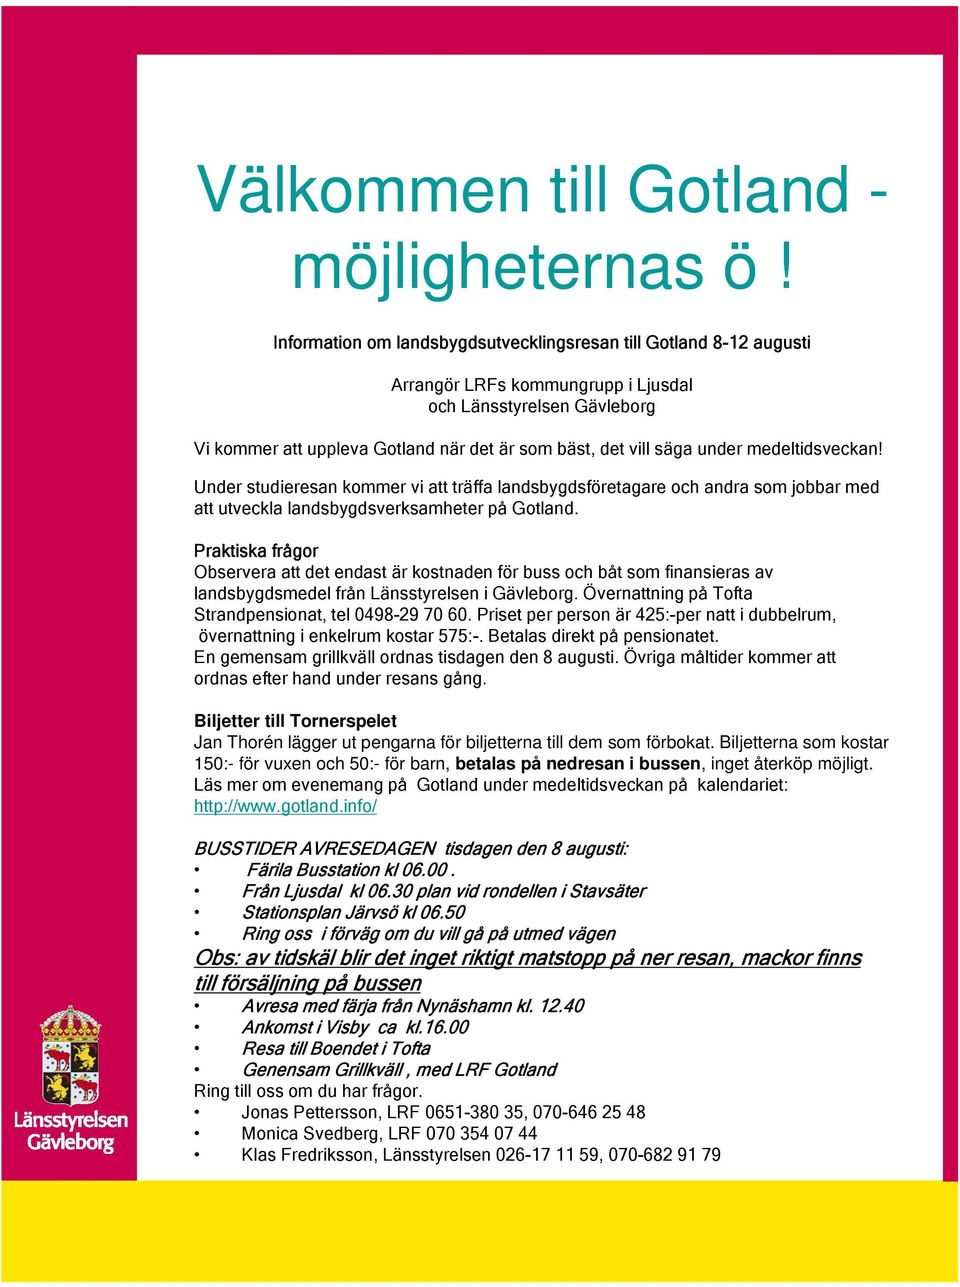 medeltidsveckan! Under studieresan kommer vi att träffa landsbygdsföretagare och andra som jobbar med att utveckla landsbygdsverksamheter på Gotland.